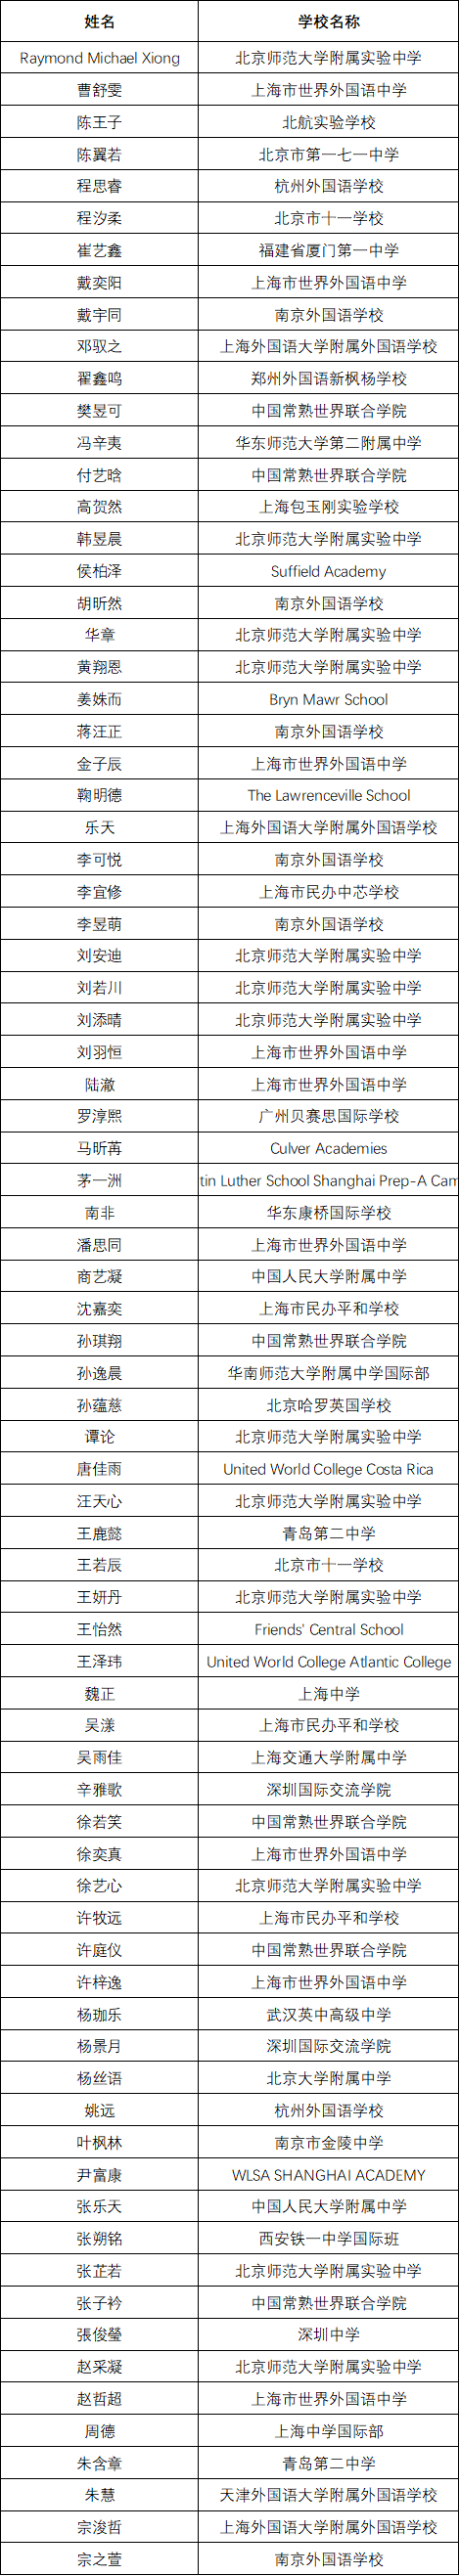 获奖名单 | 2020年国际语言学奥林匹克中国区终选